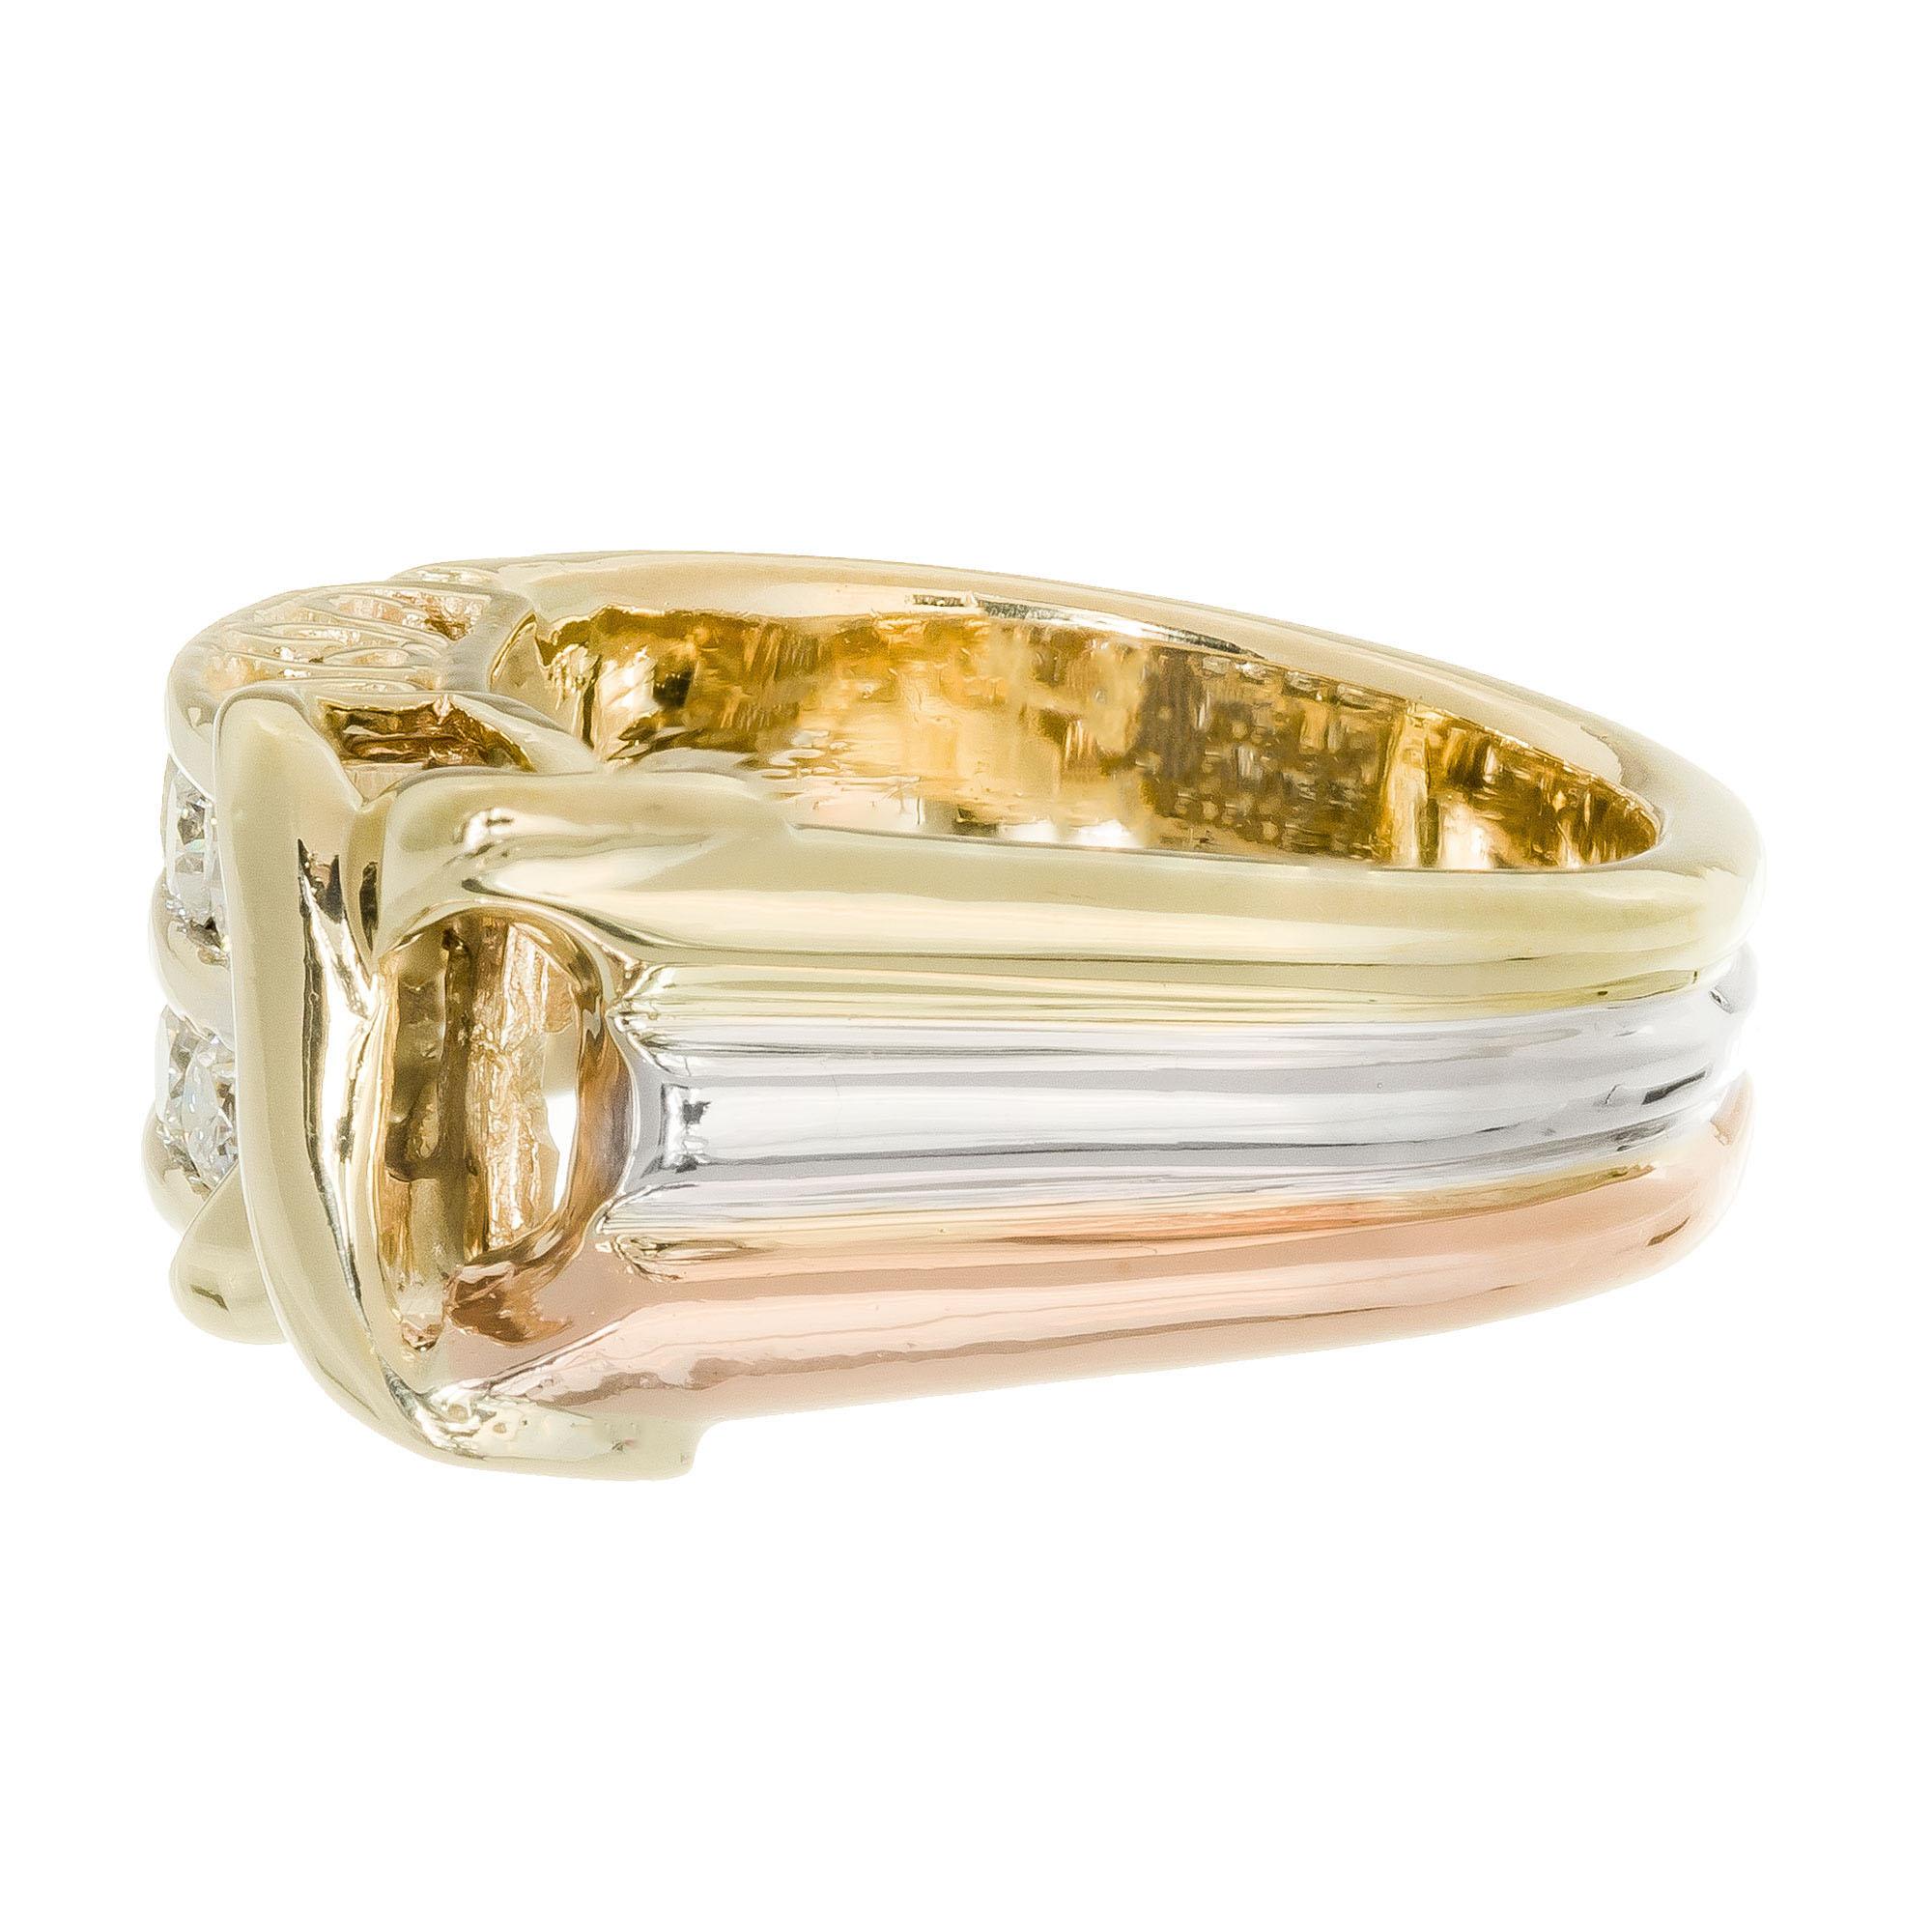 Bague en diamant ADE.  La tige de l'anneau a une forme unique.  Il est plat d'un côté et incurvé de l'autre.  Elle est constituée de trois bandes distinctes d'or, rose, blanc et jaune, 14k.  Il y a un 